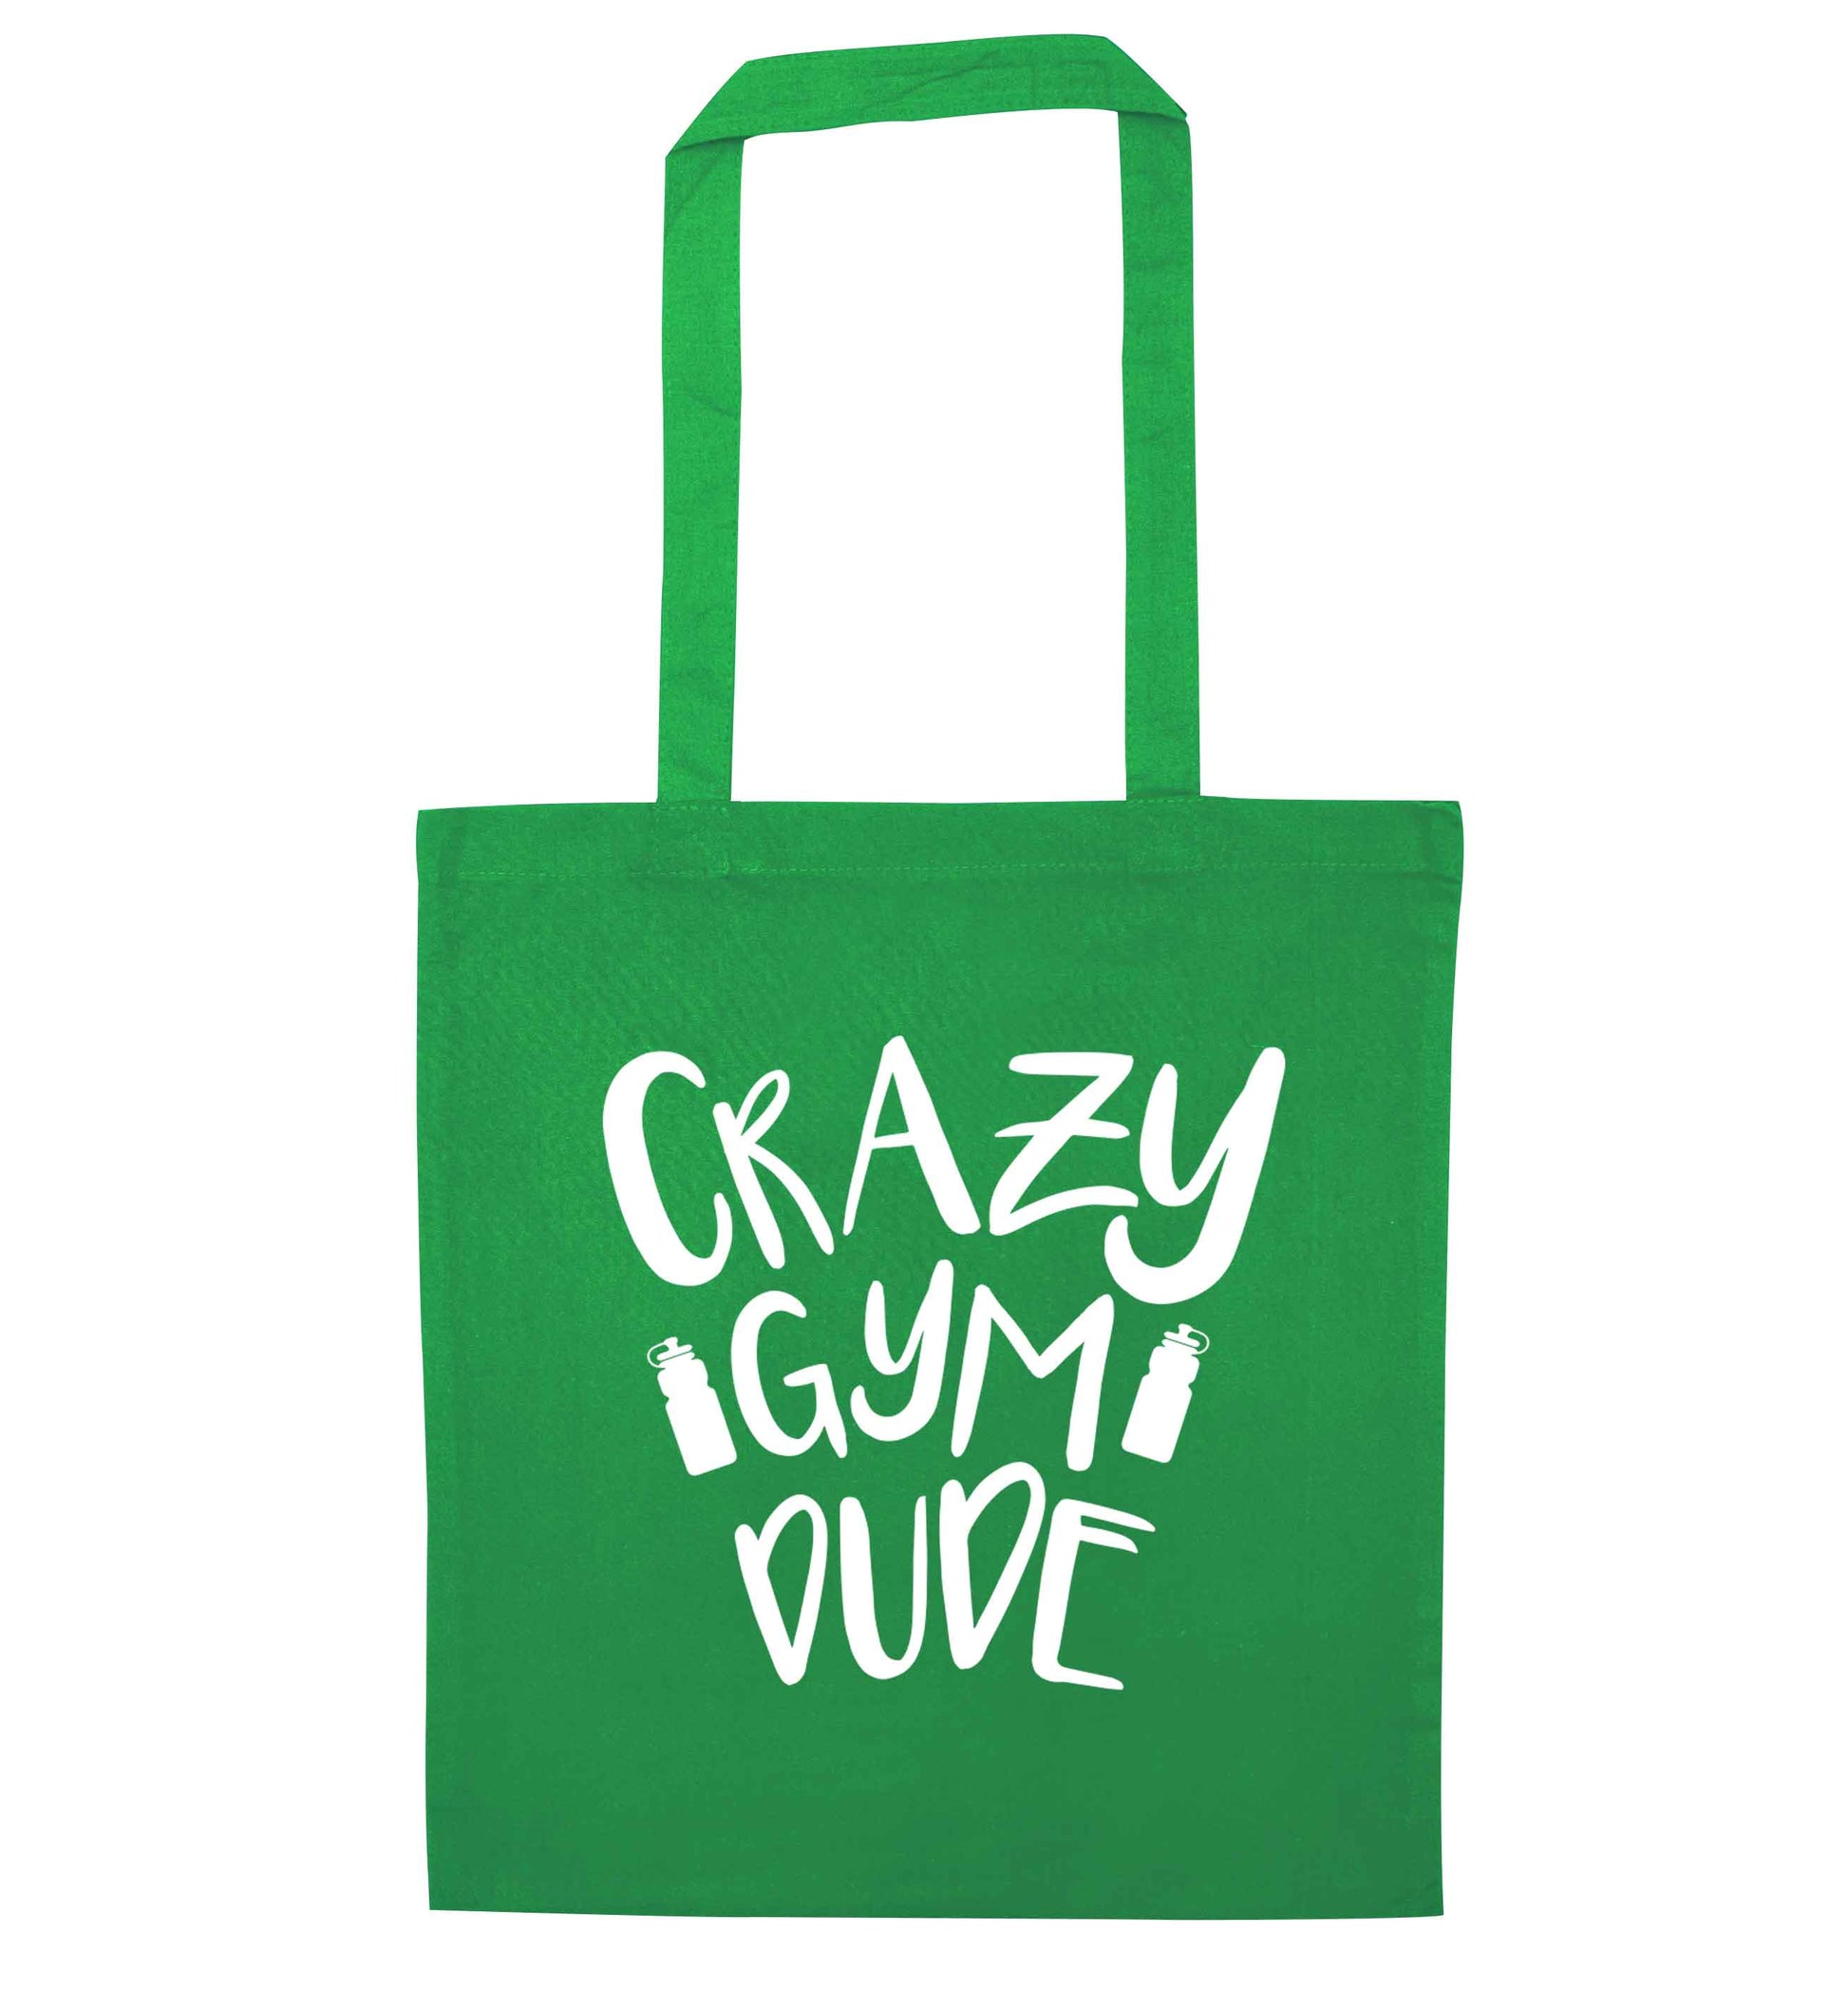 Crazy gym dude green tote bag